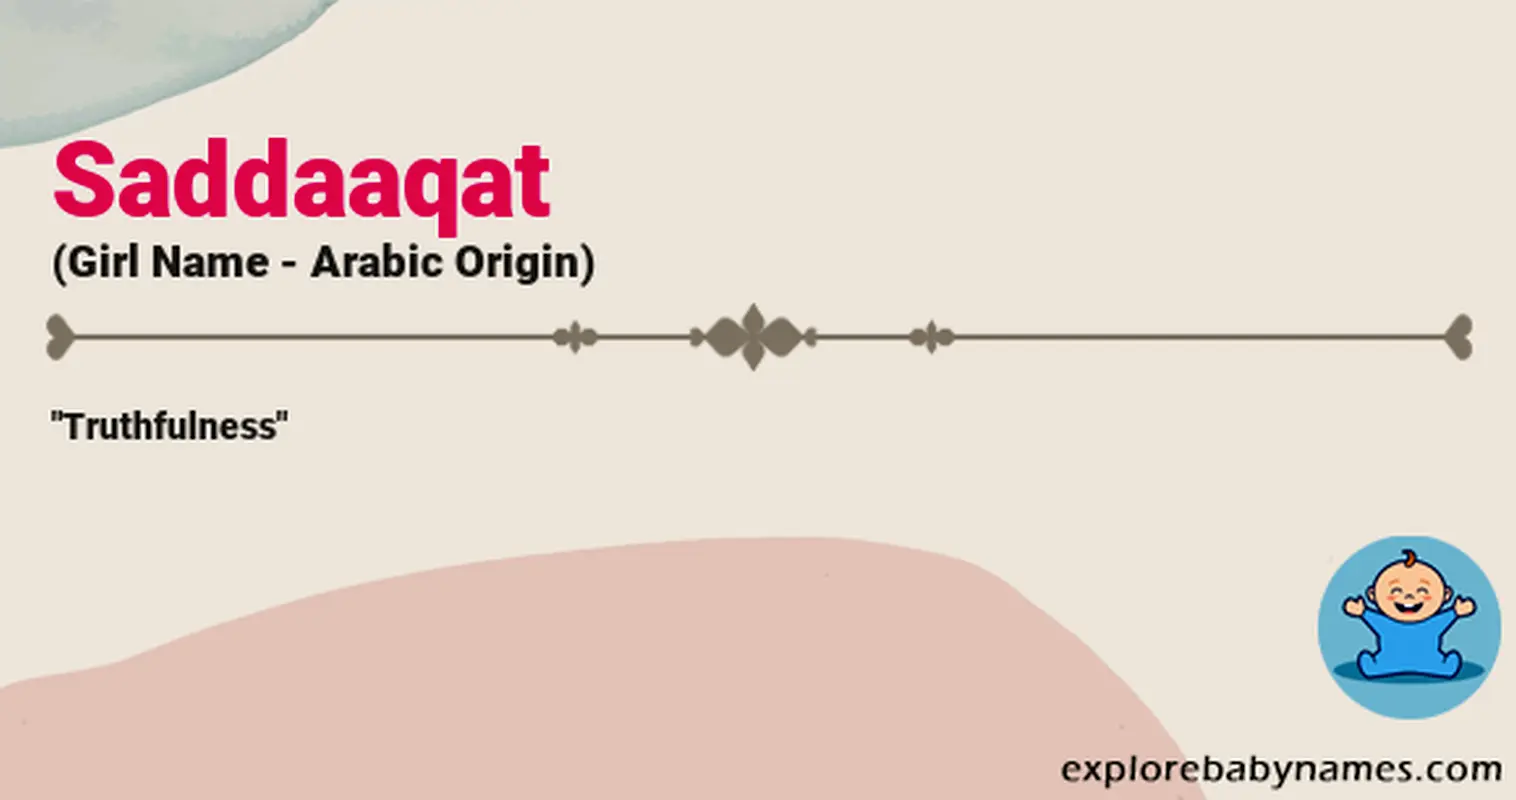 Meaning of Saddaaqat